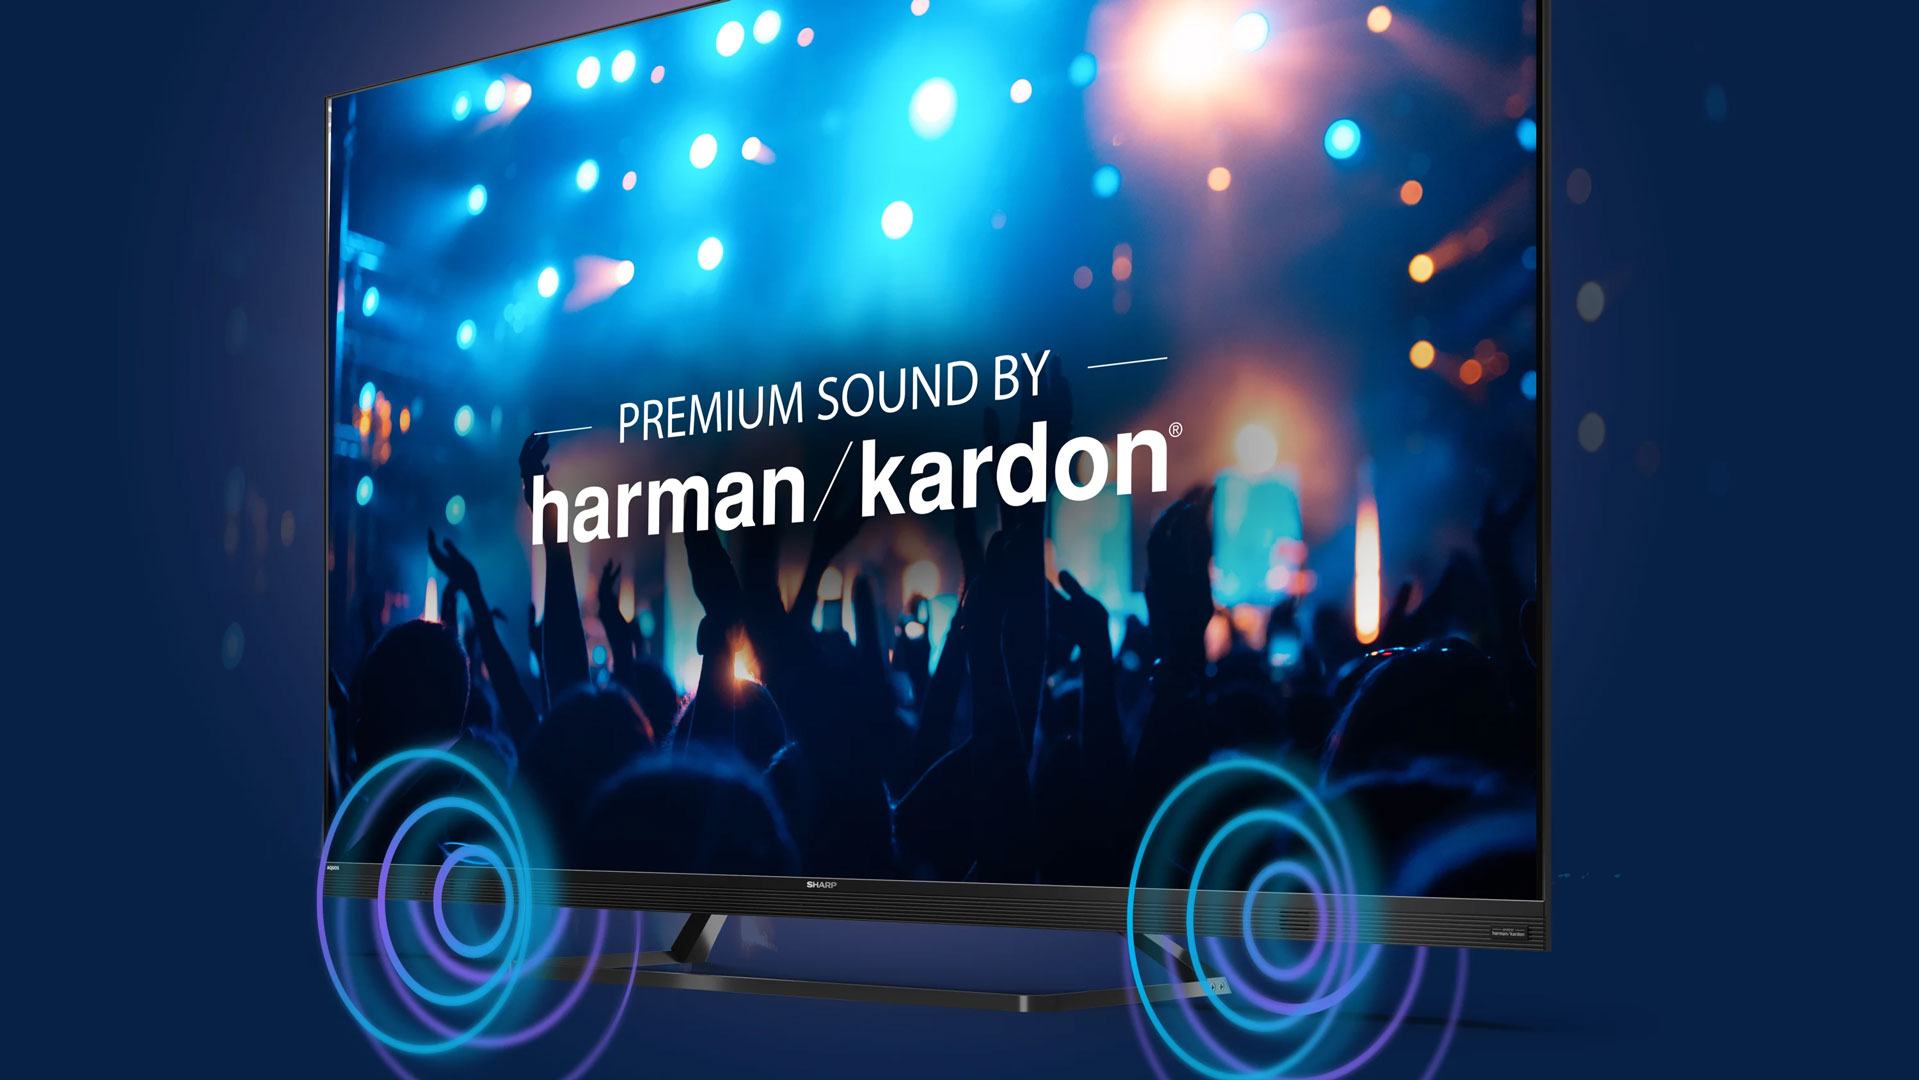 Harman/Kardon sound